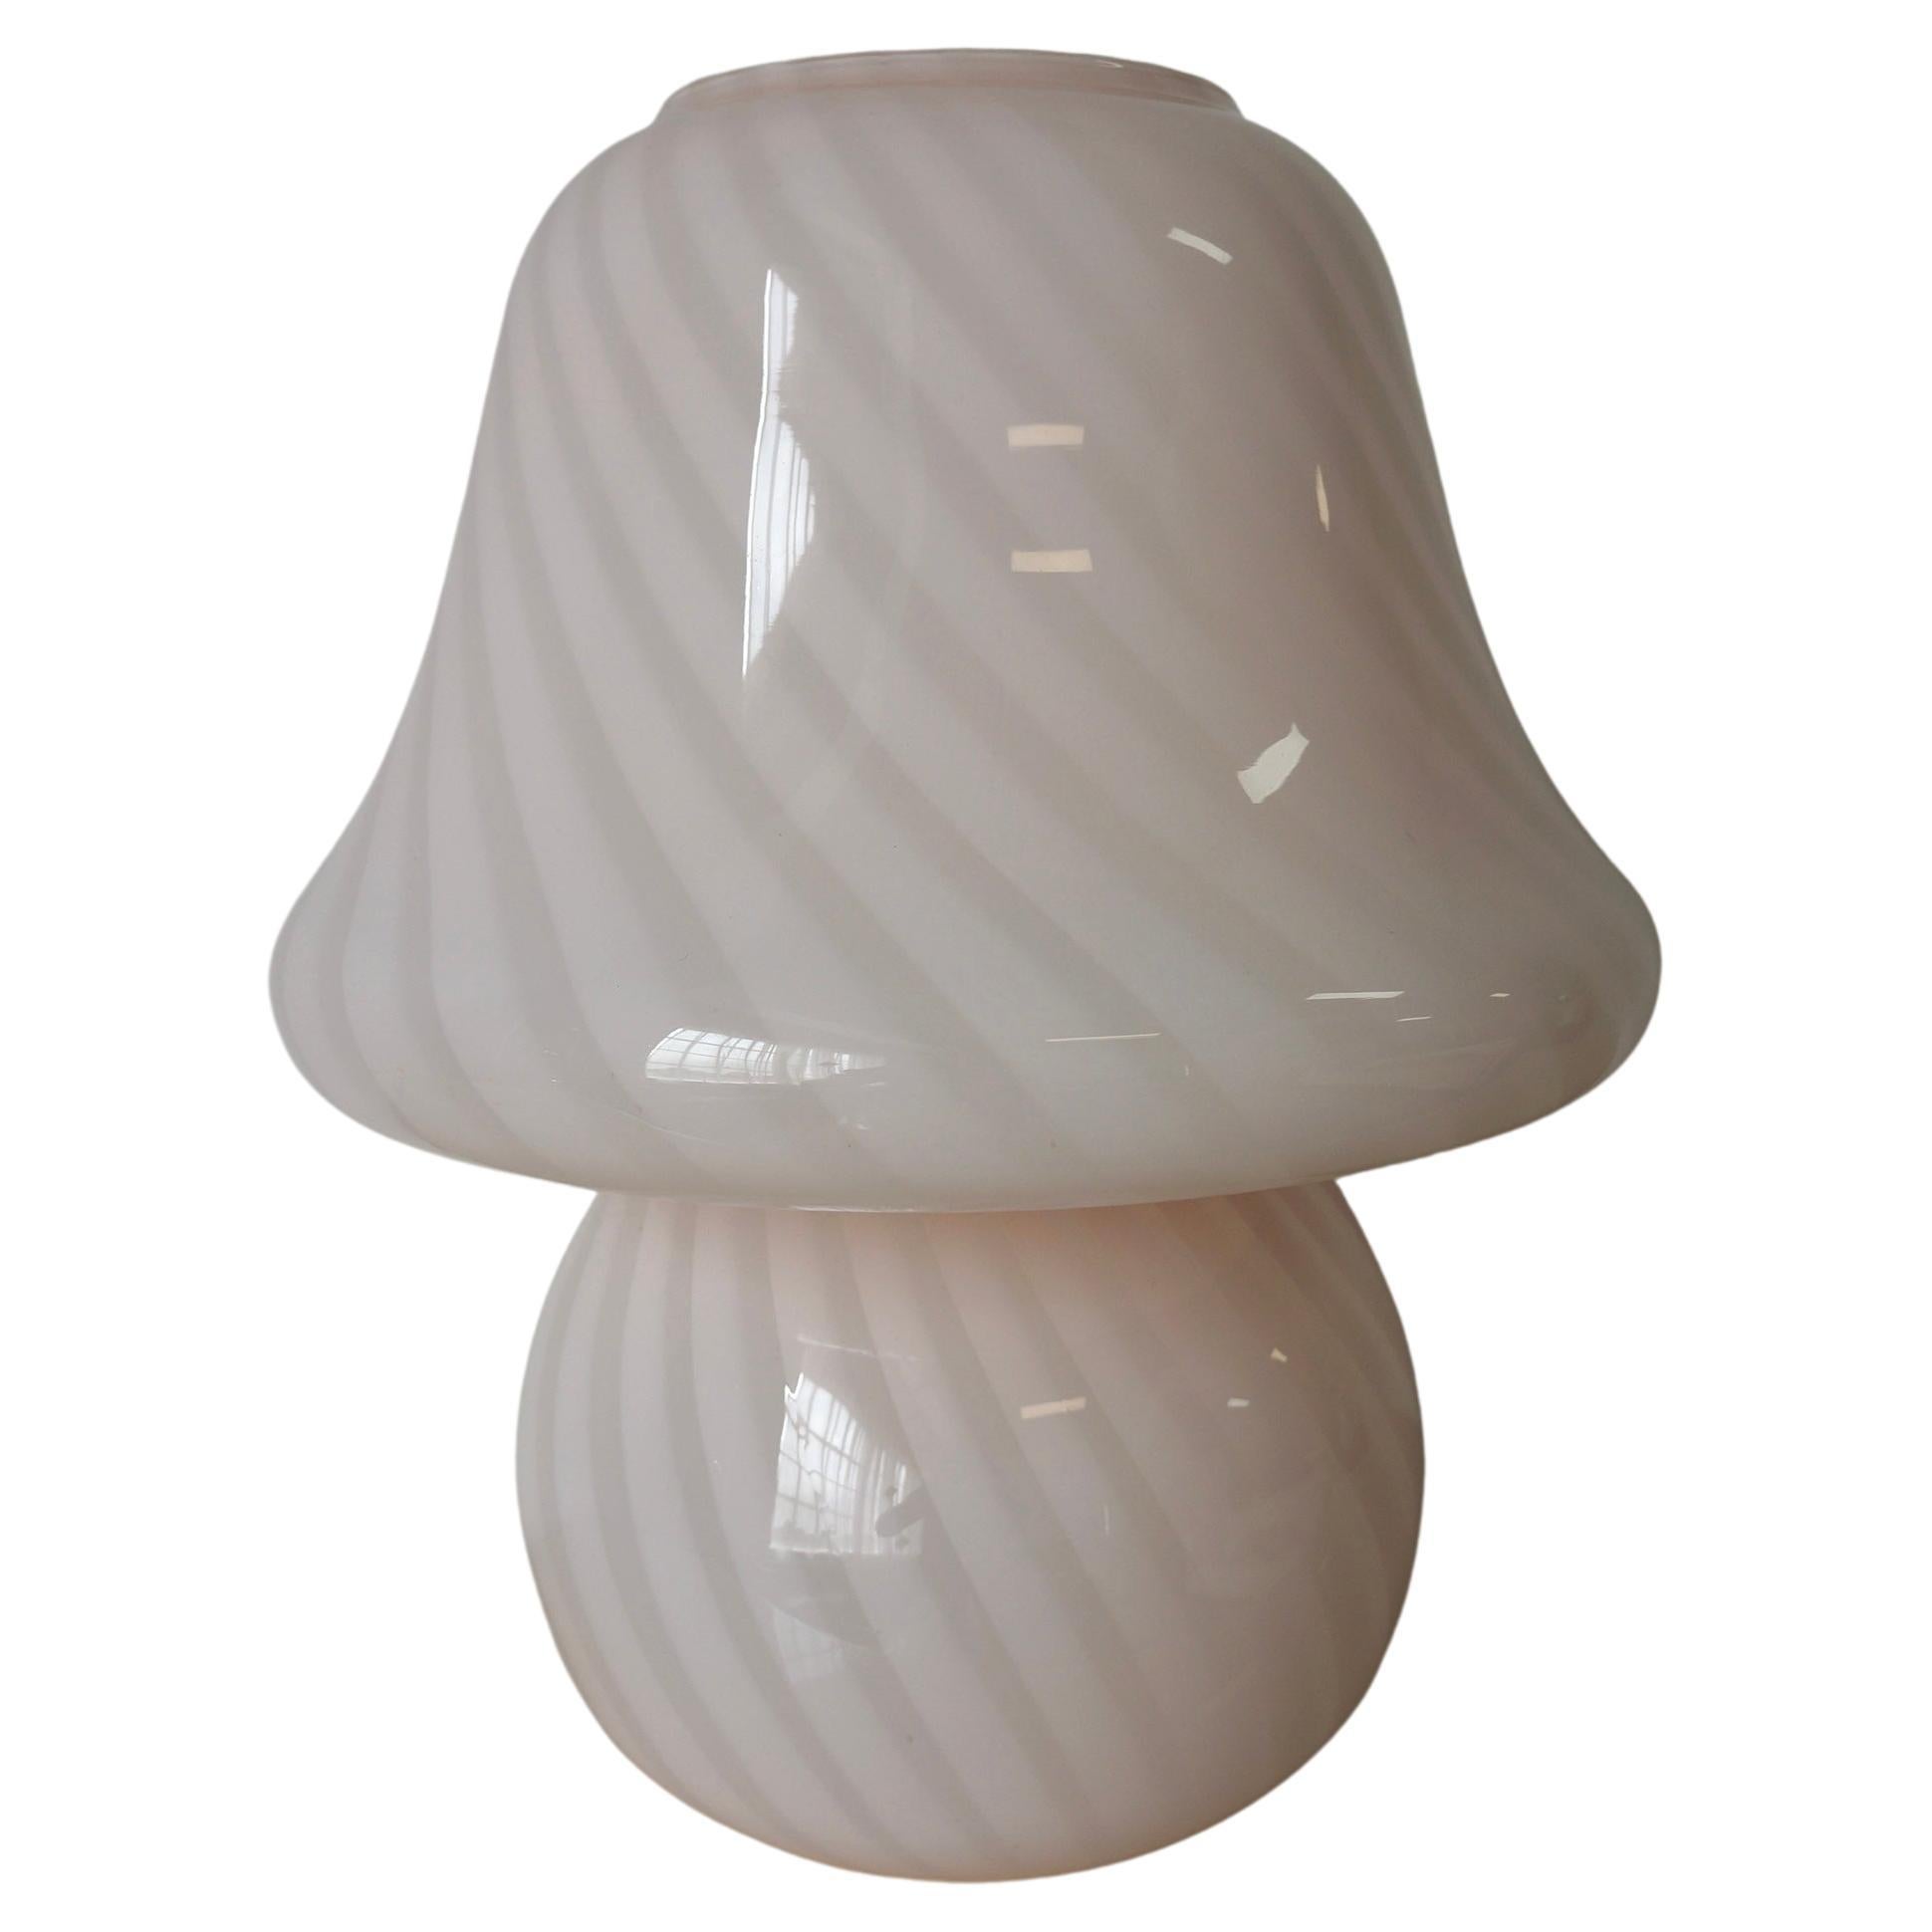 Wunderschöne Pilzlampe aus Murano-Kunstglas mit ausgestellter Spitze. Es wurde ursprünglich in den 1970er Jahren auf der Insel Murano in Italien von Murano-Glaskünstlern hergestellt. Diese besondere Pilzform und -größe ist ein seltener Fund mit der